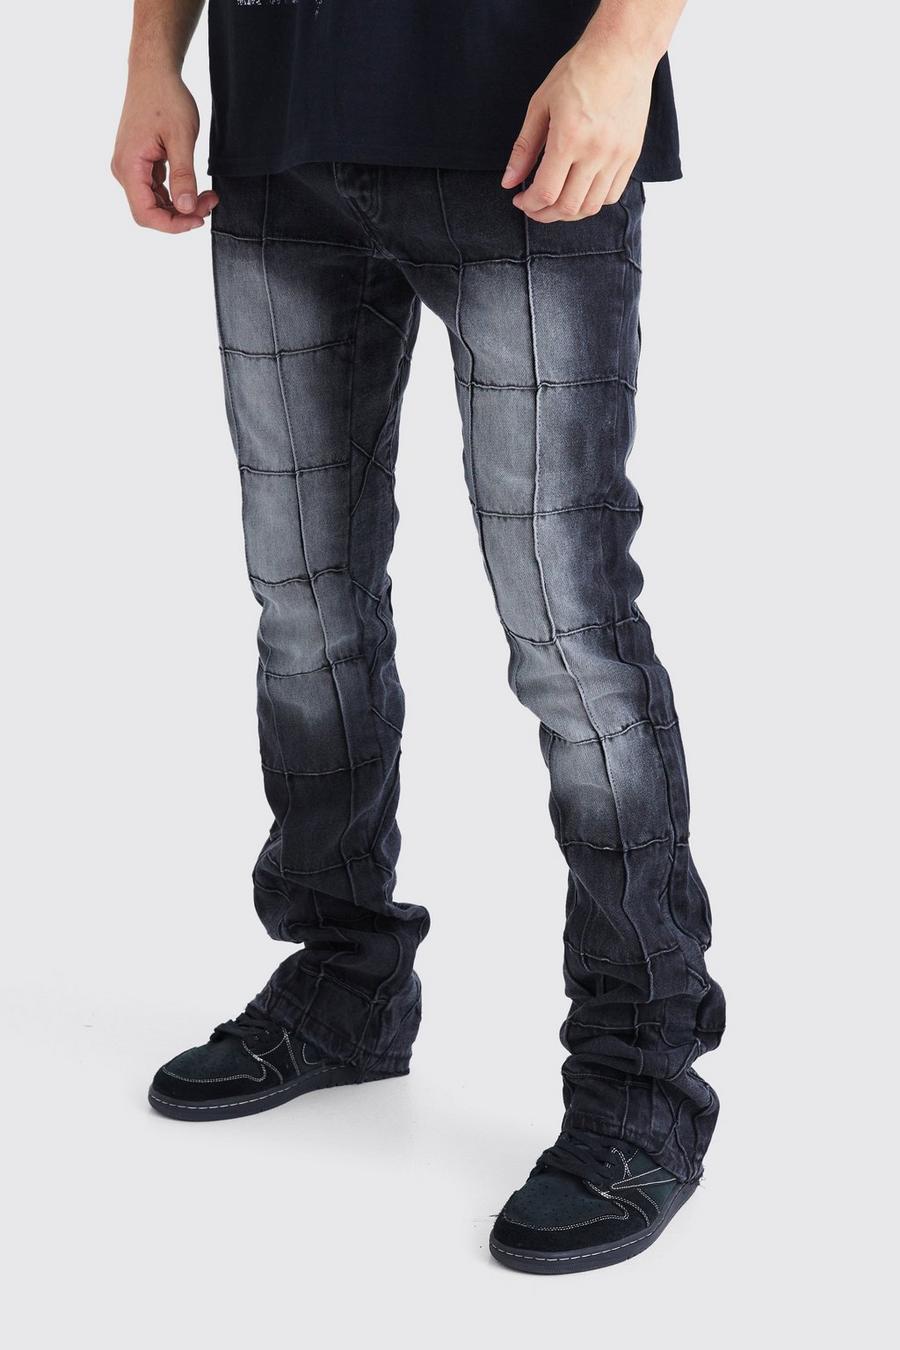 Jeans Tall Slim Fit in denim rigido con pannelli a zampa e inserti, Washed black